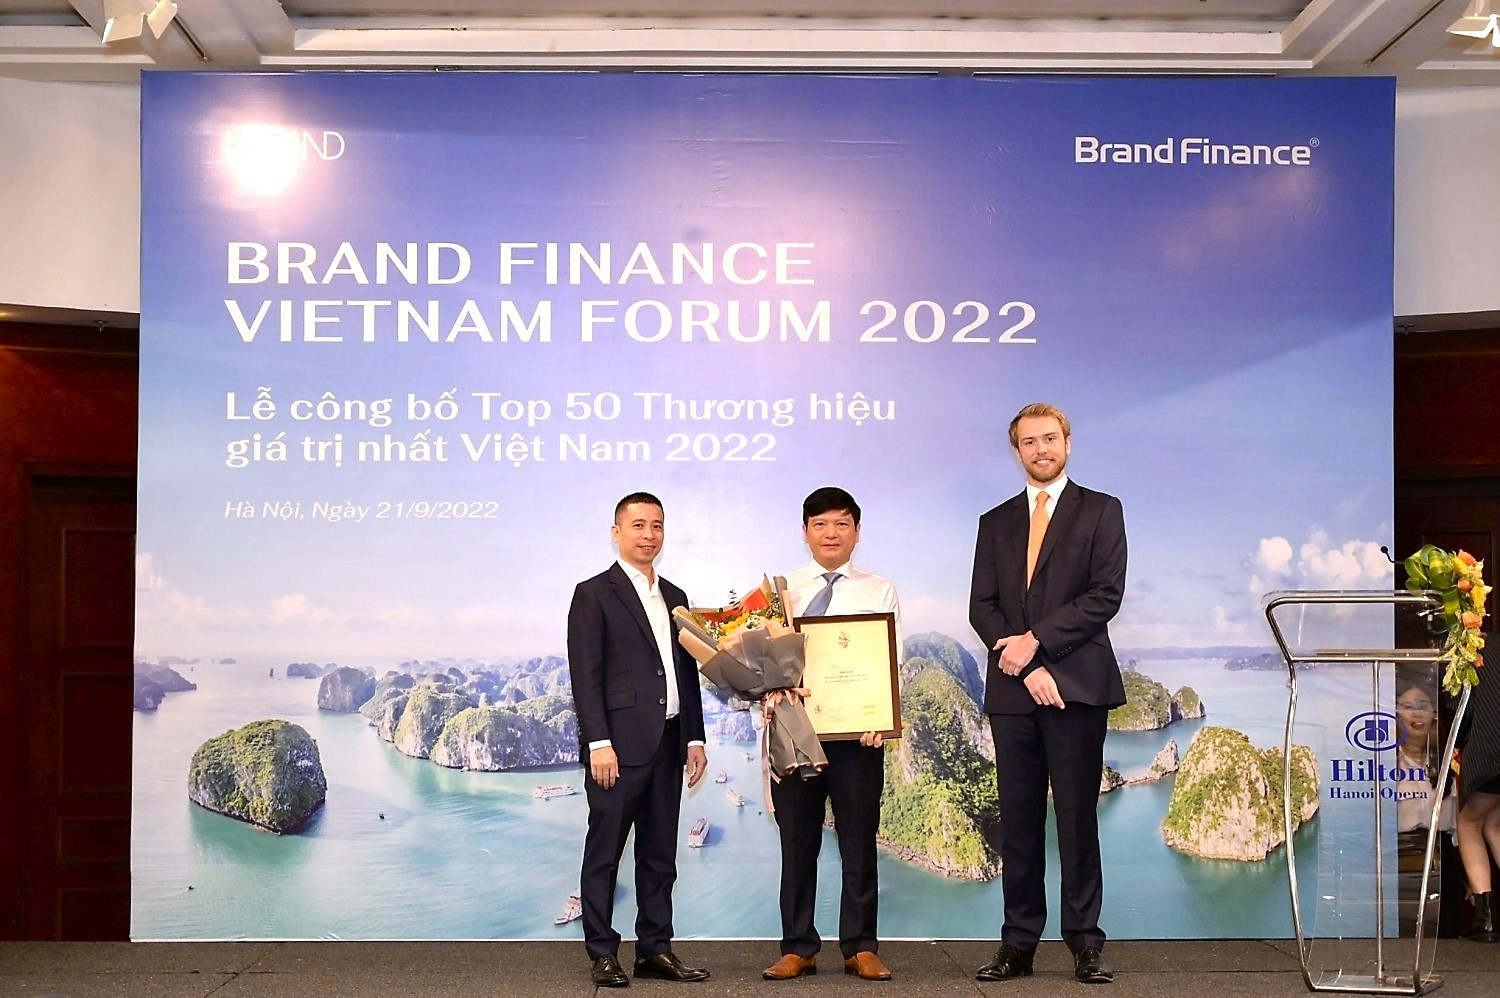 Đại diện Petrovietnam nhận vinh danh Top 10 thương hiệu giá trị nhất Việt Nam năm 2022.